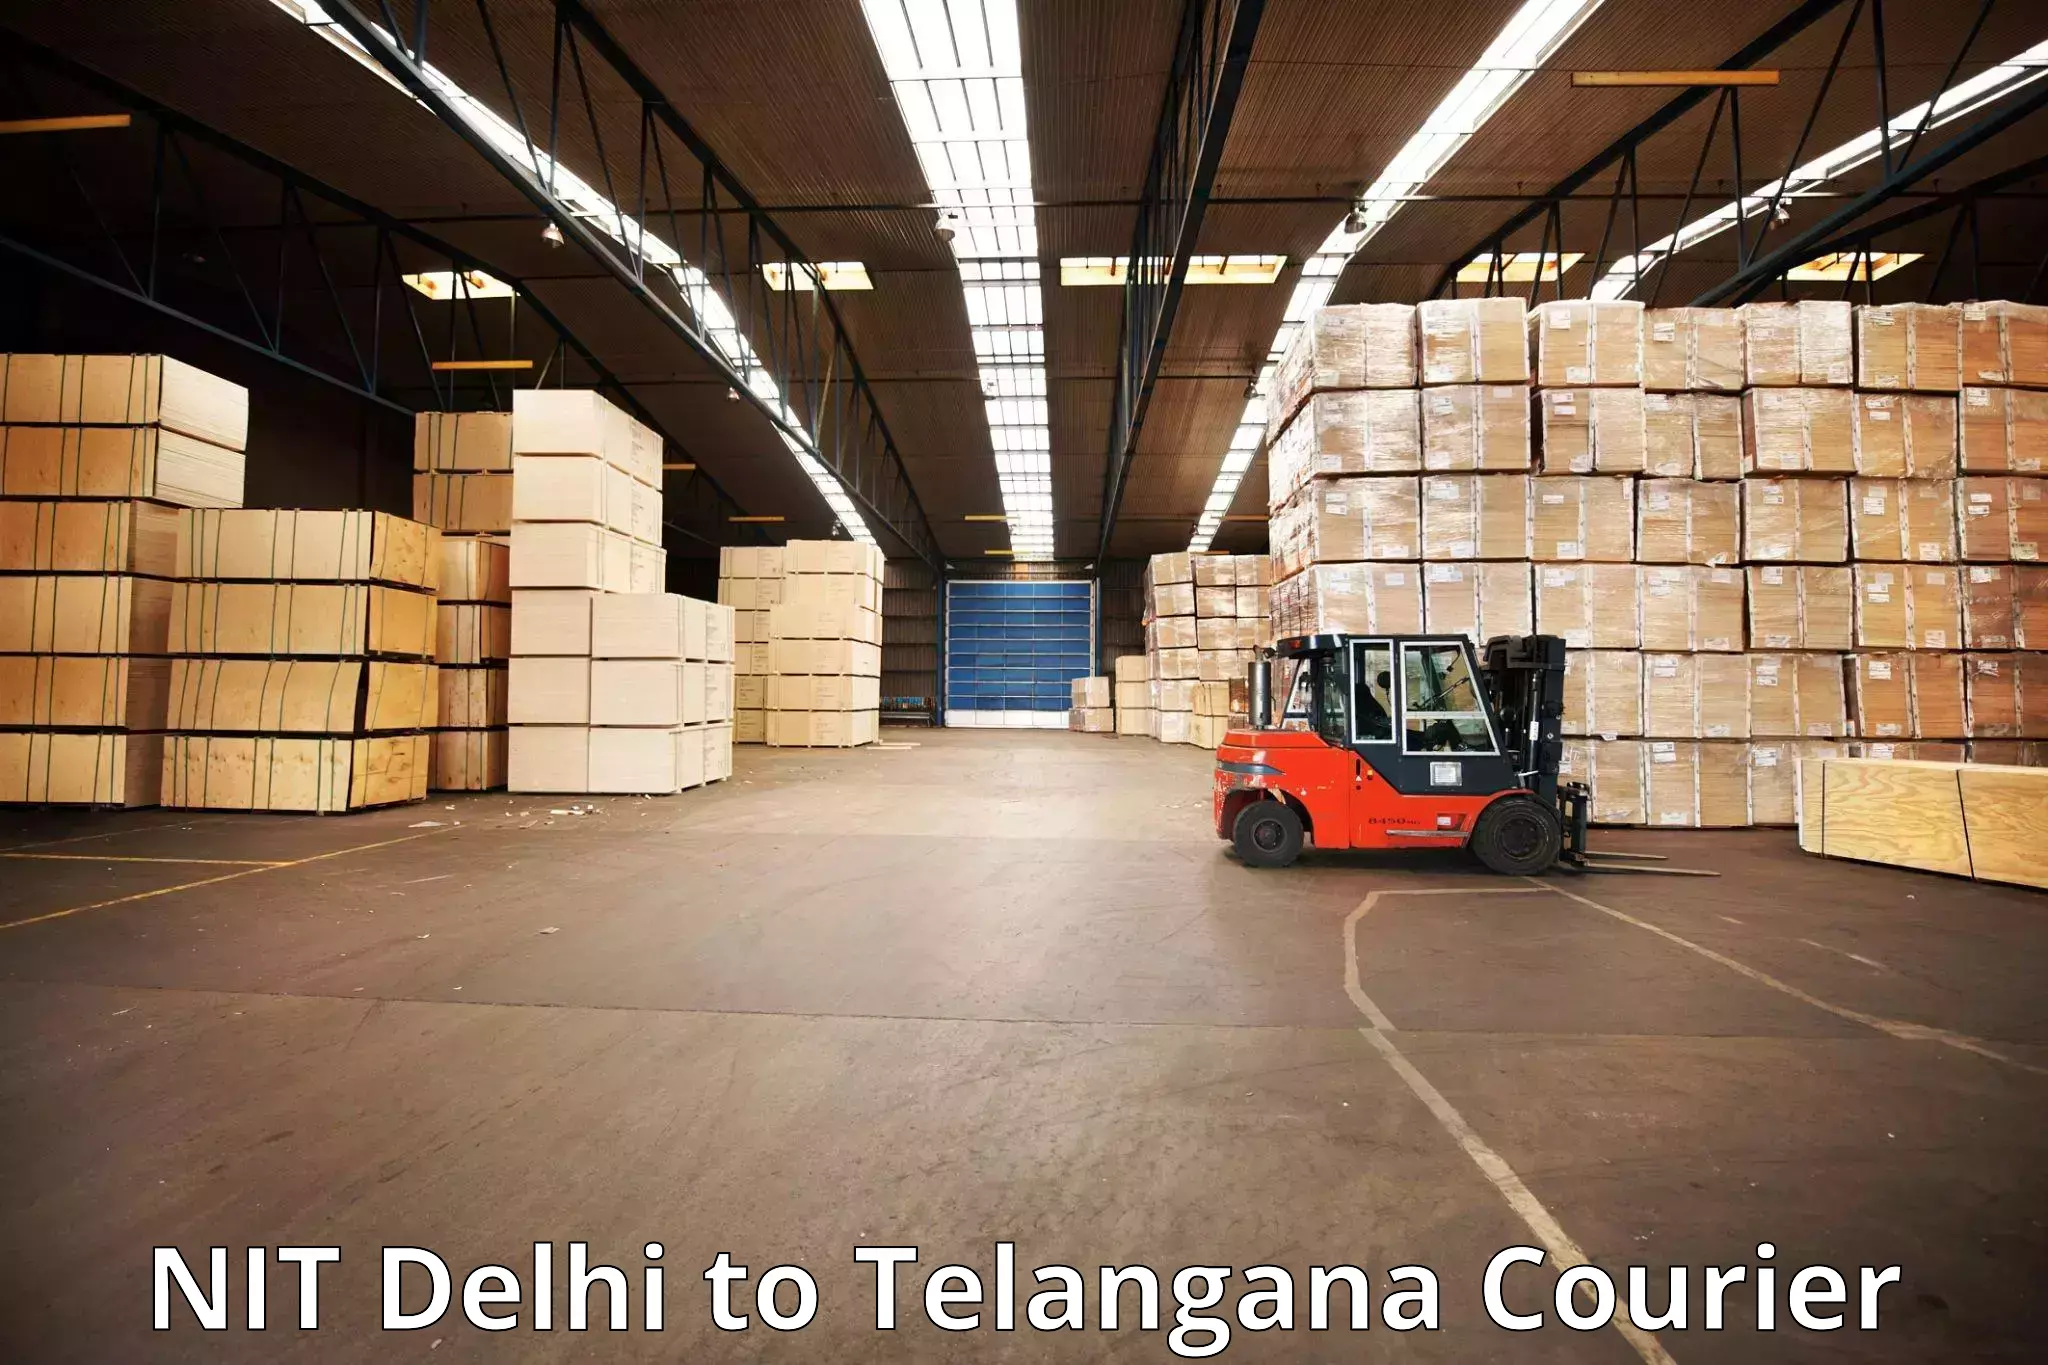 Luggage shipment specialists NIT Delhi to Karimnagar